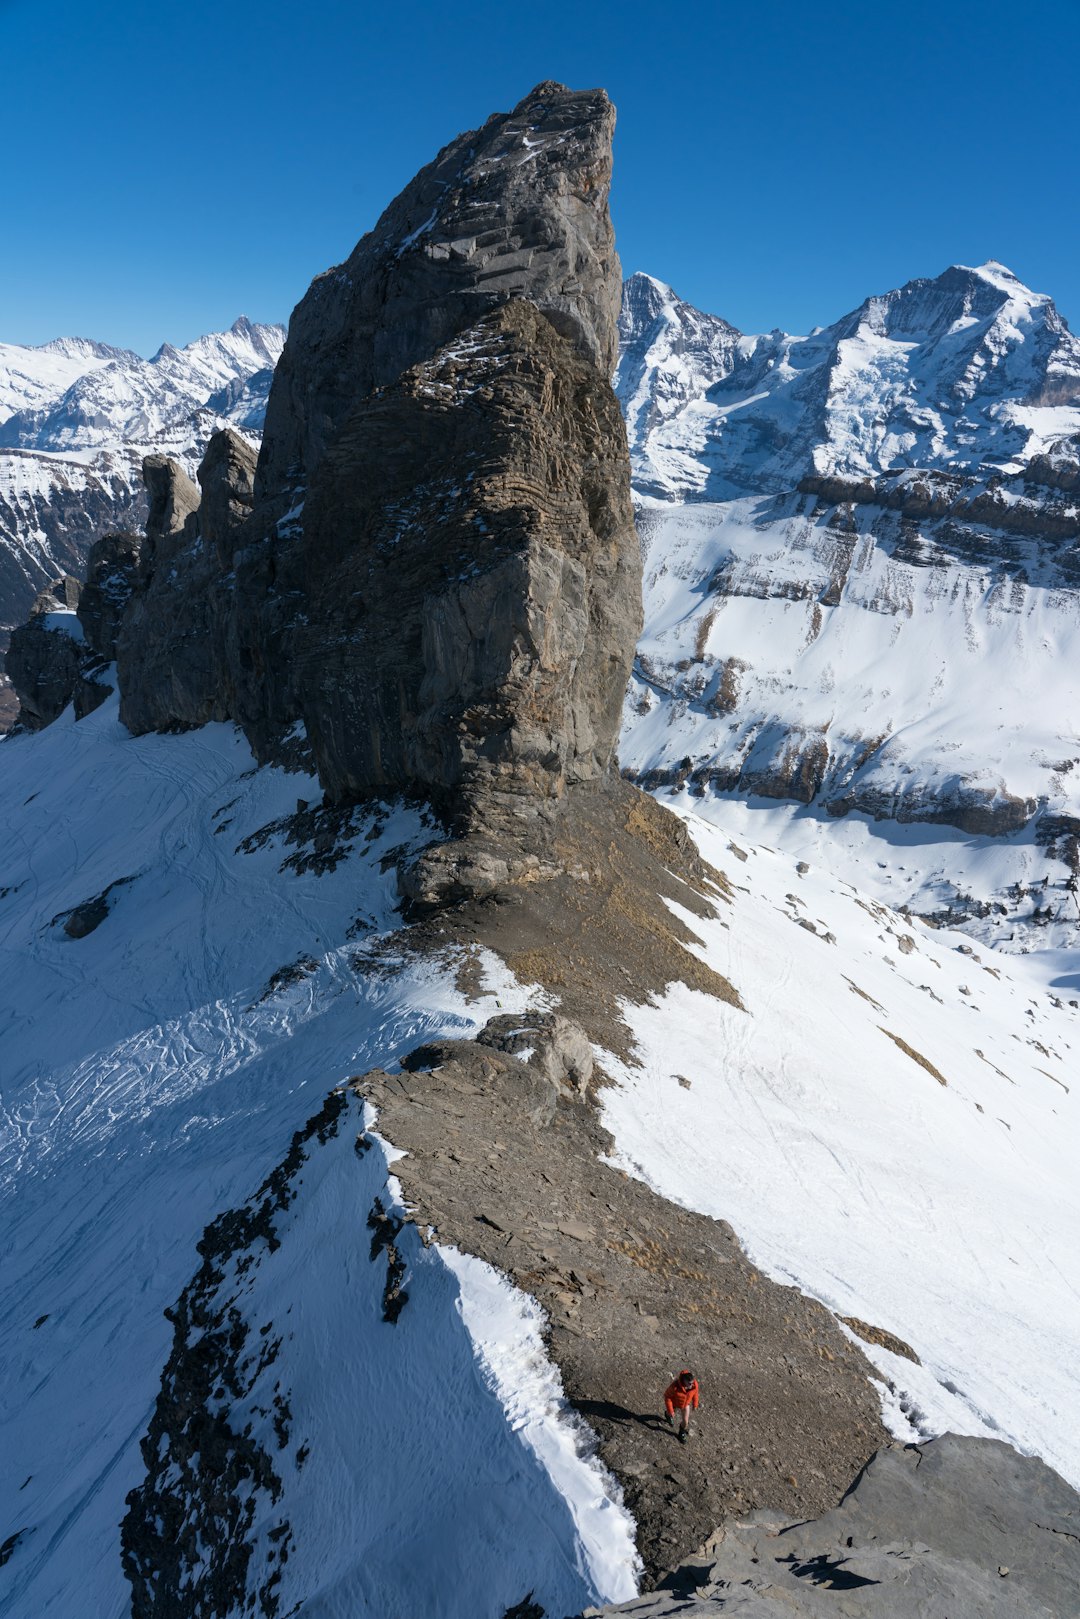 GIGANTAR: Dei siste dagane av turen nyttar vi lenger sør i landet, i fjella kring Eiger-massivet. Her er fjella ikkje fjell, men gigantar med enorme hengebrear til skjegg. I bakgrunnen ser vi to av dei største, Mönch og Jungfrau, med den berømte togstasjonen og restauranten Jungfraujoch (3454) midt i mellom.